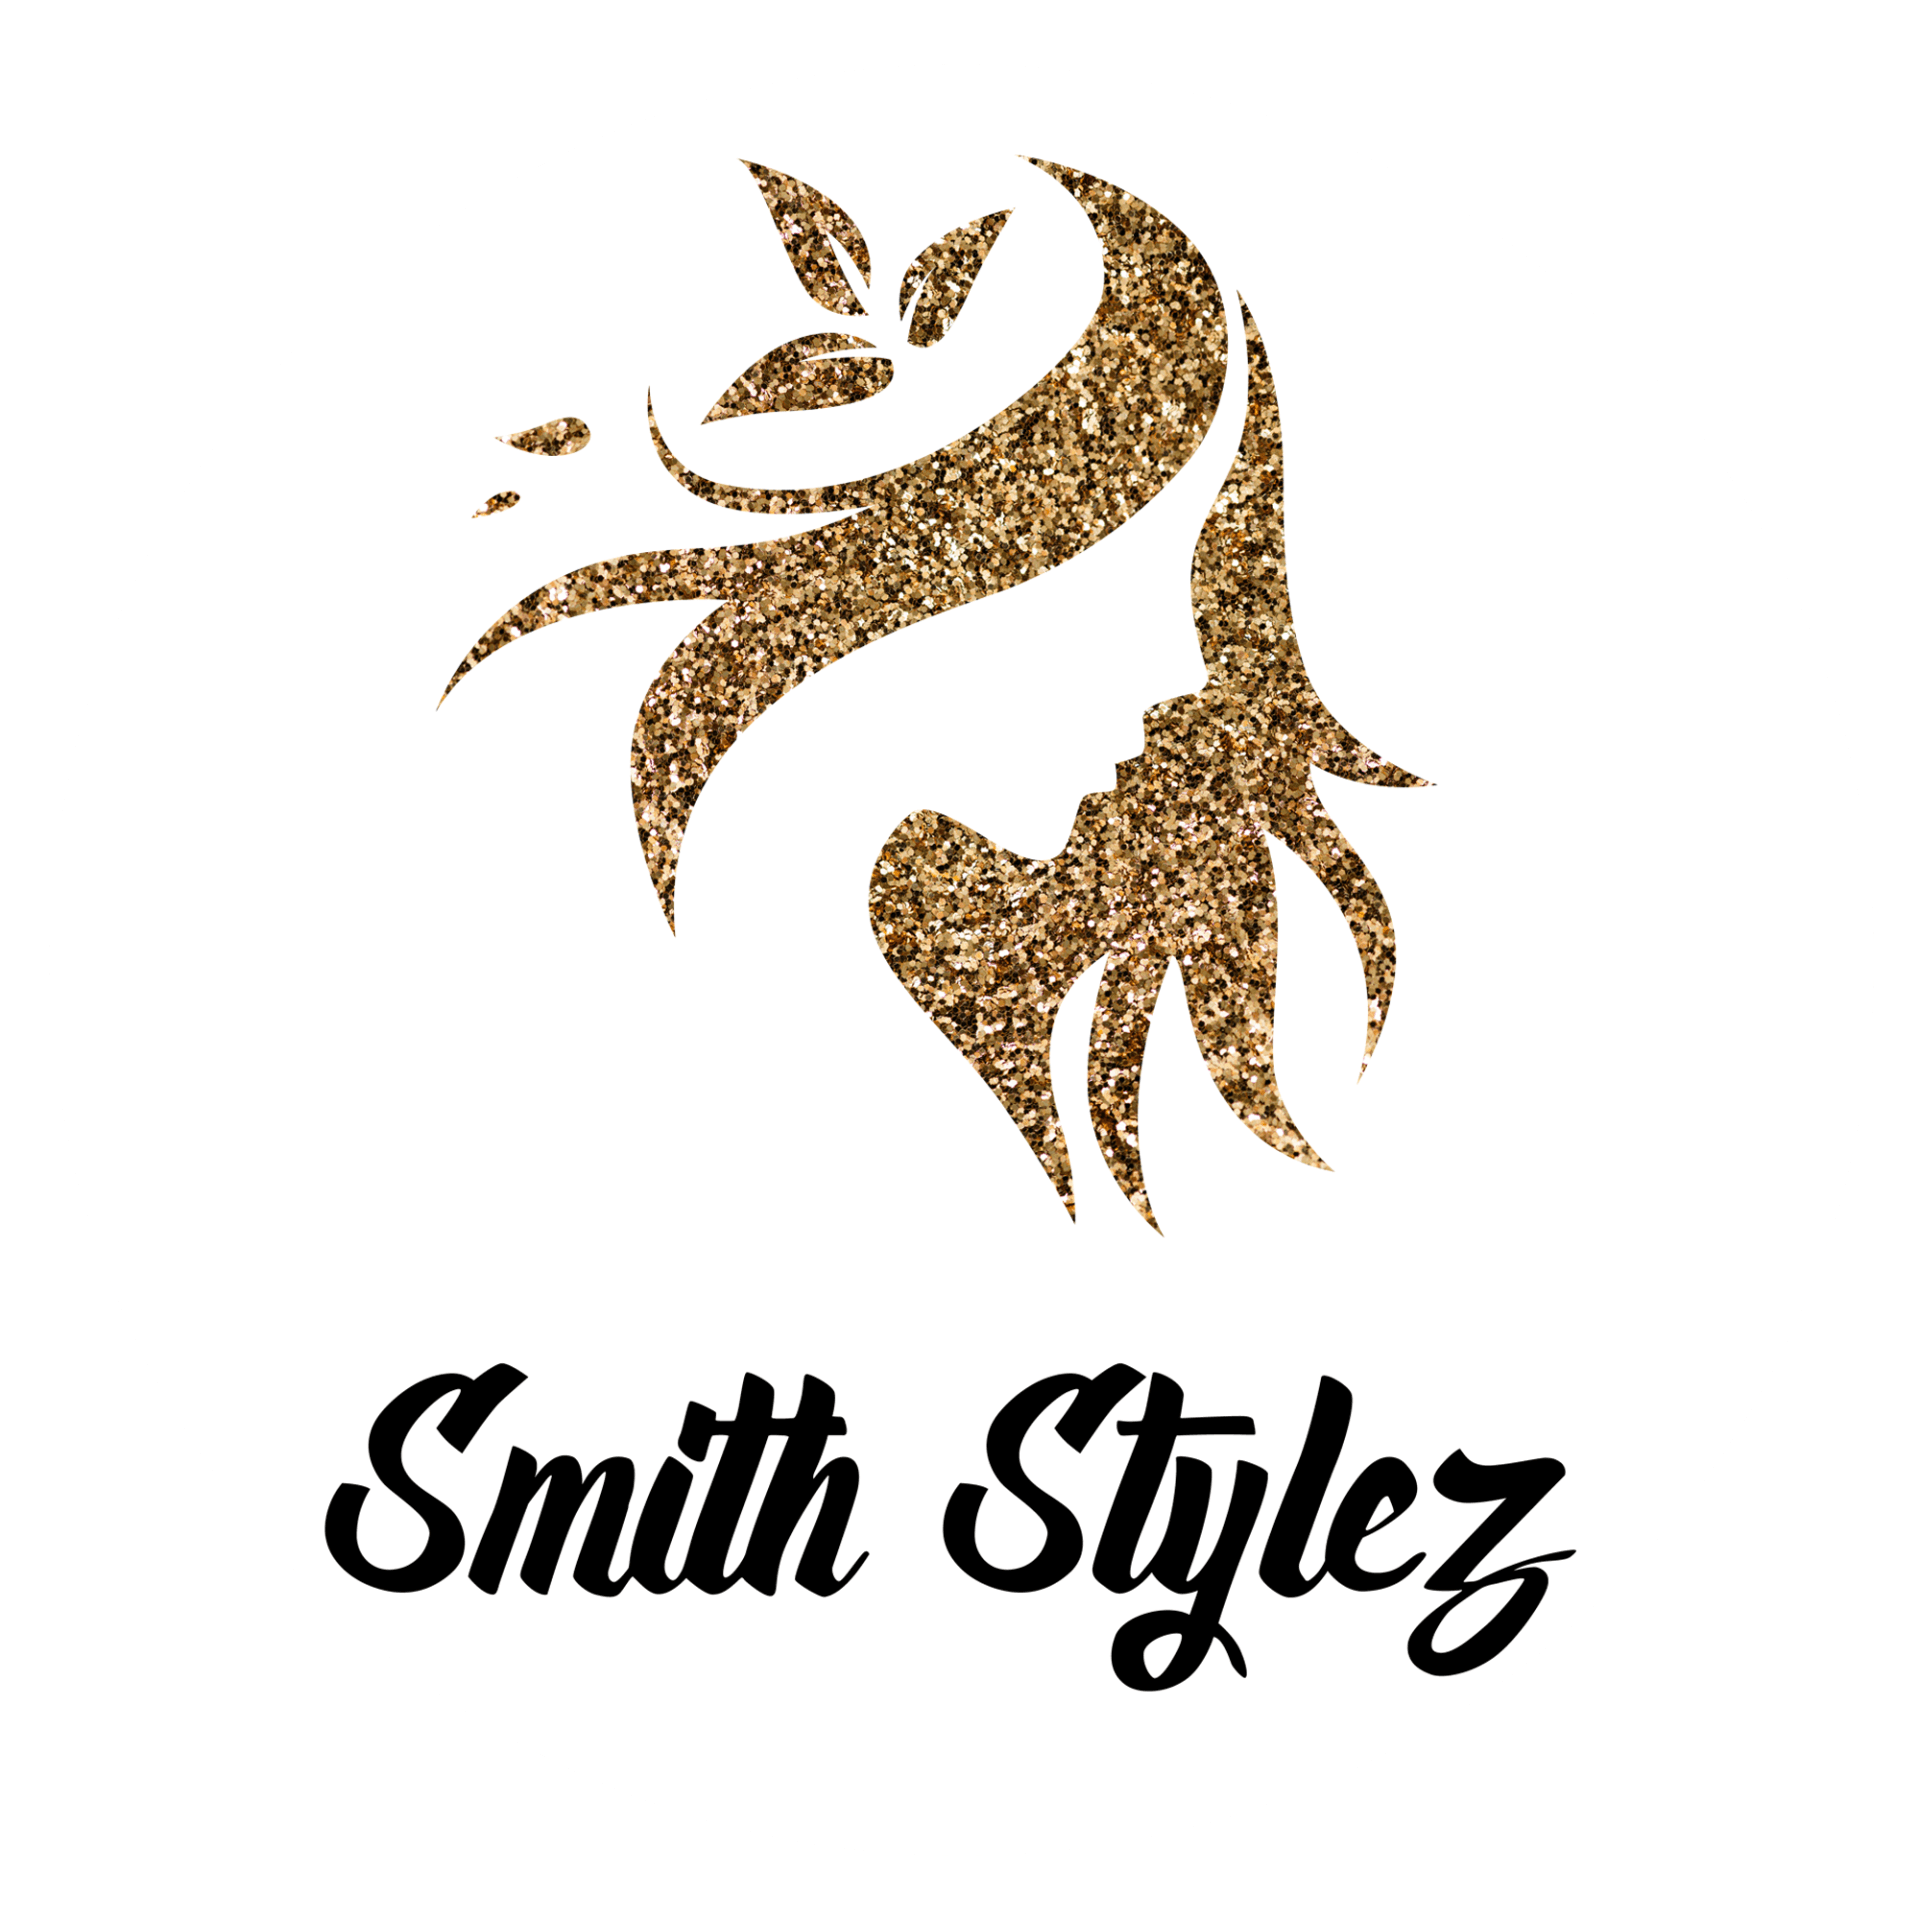 Smith Stylez logo